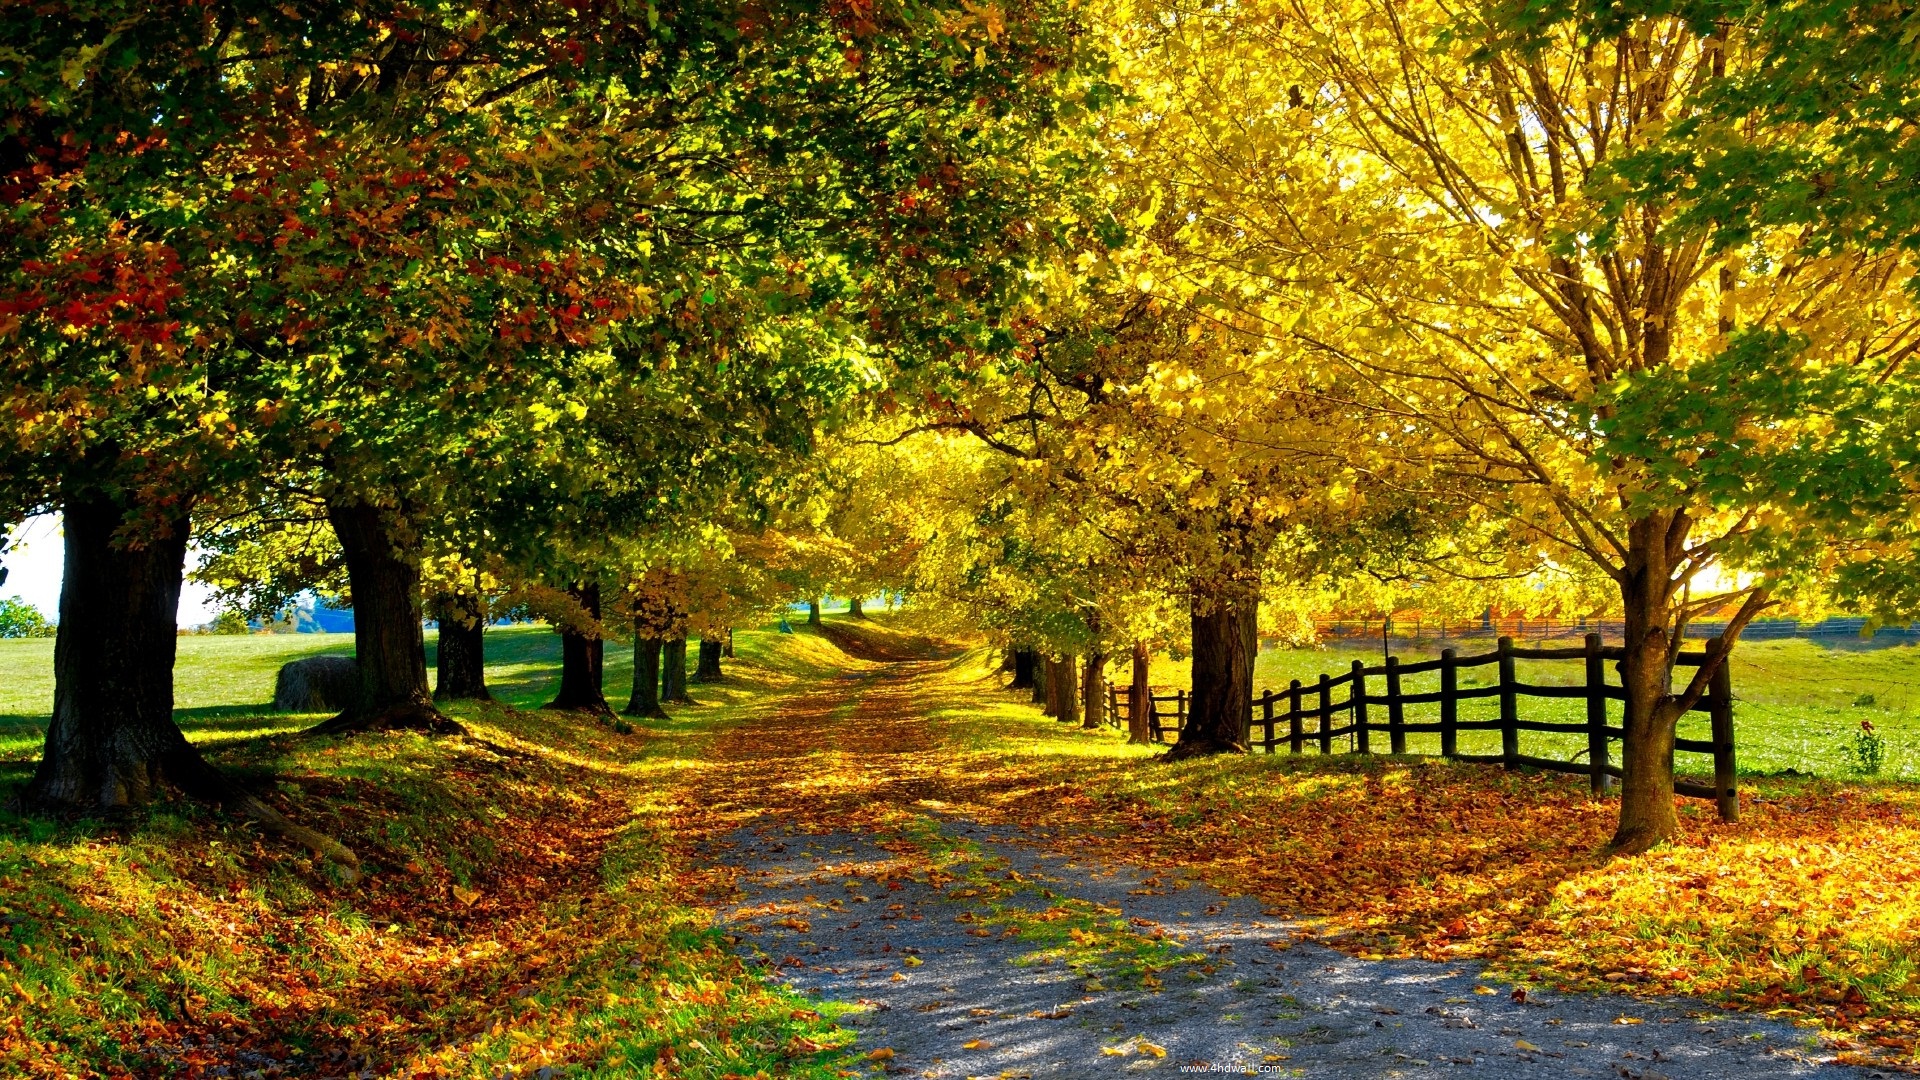 Autumn Season Hd Wallpapers, Hd Autumn Seasons Wallpapers - Nature Desktop Wallpaper Hd - HD Wallpaper 